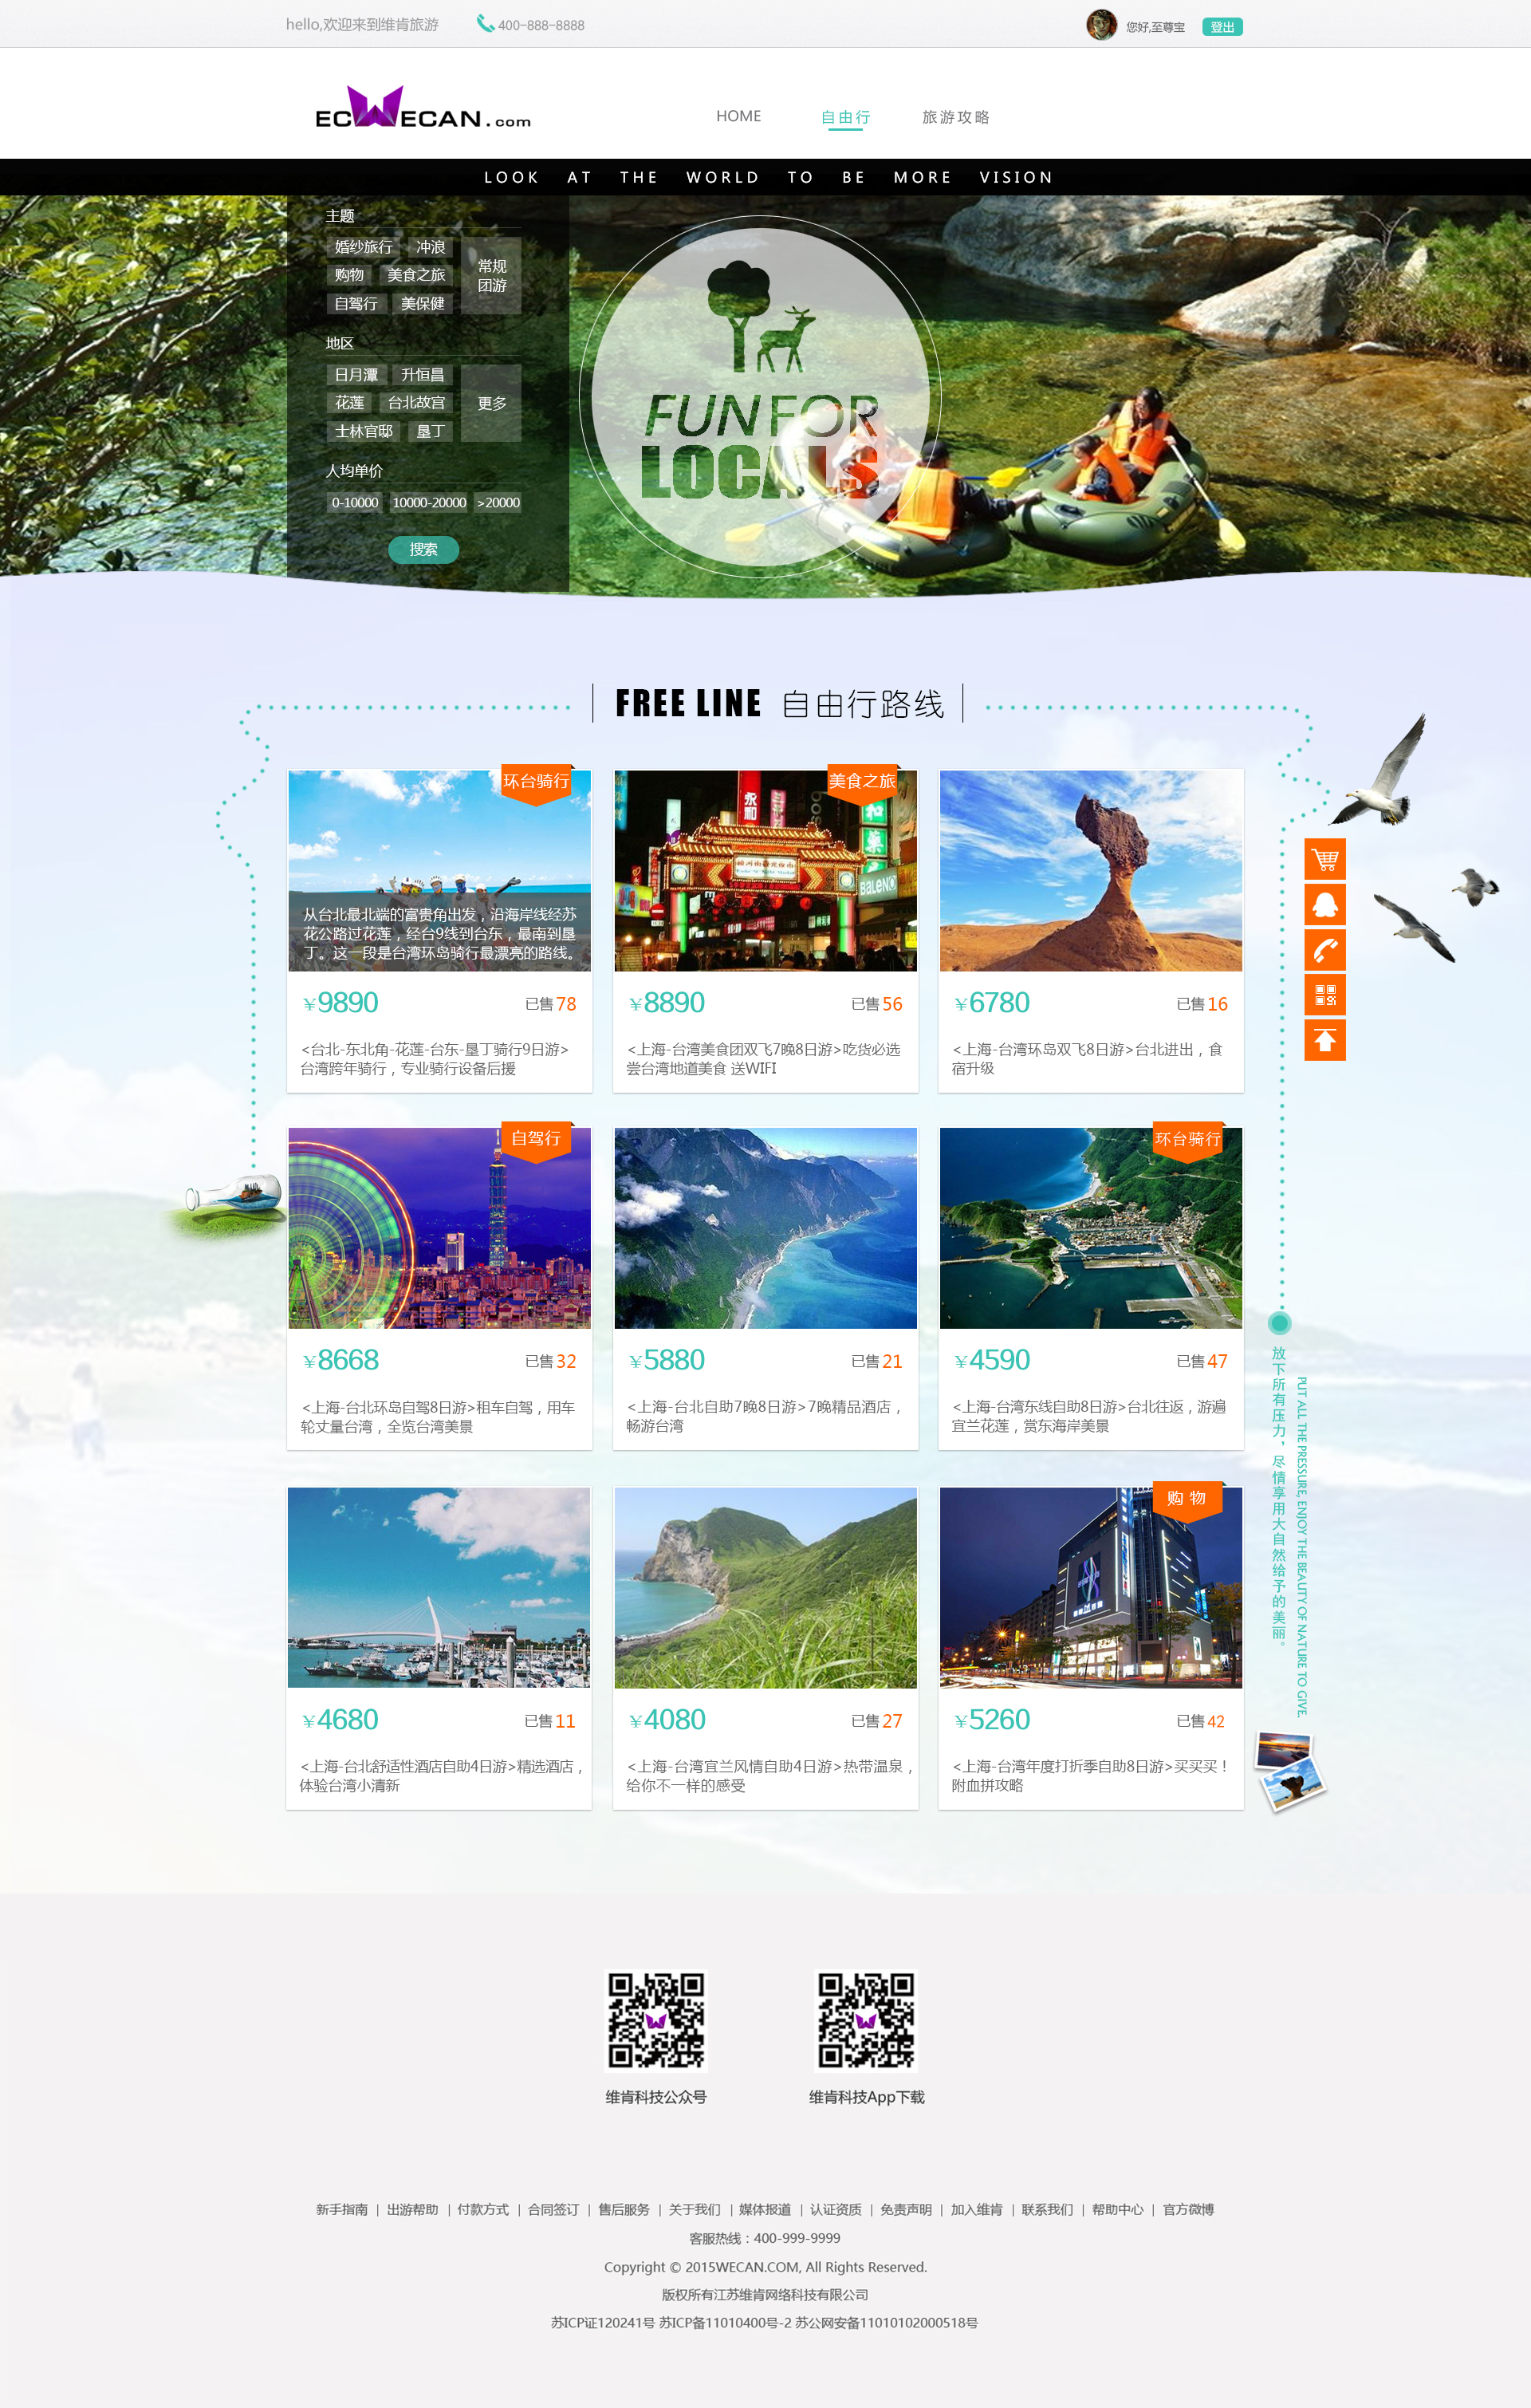 中国旅游网站十大品牌排行榜